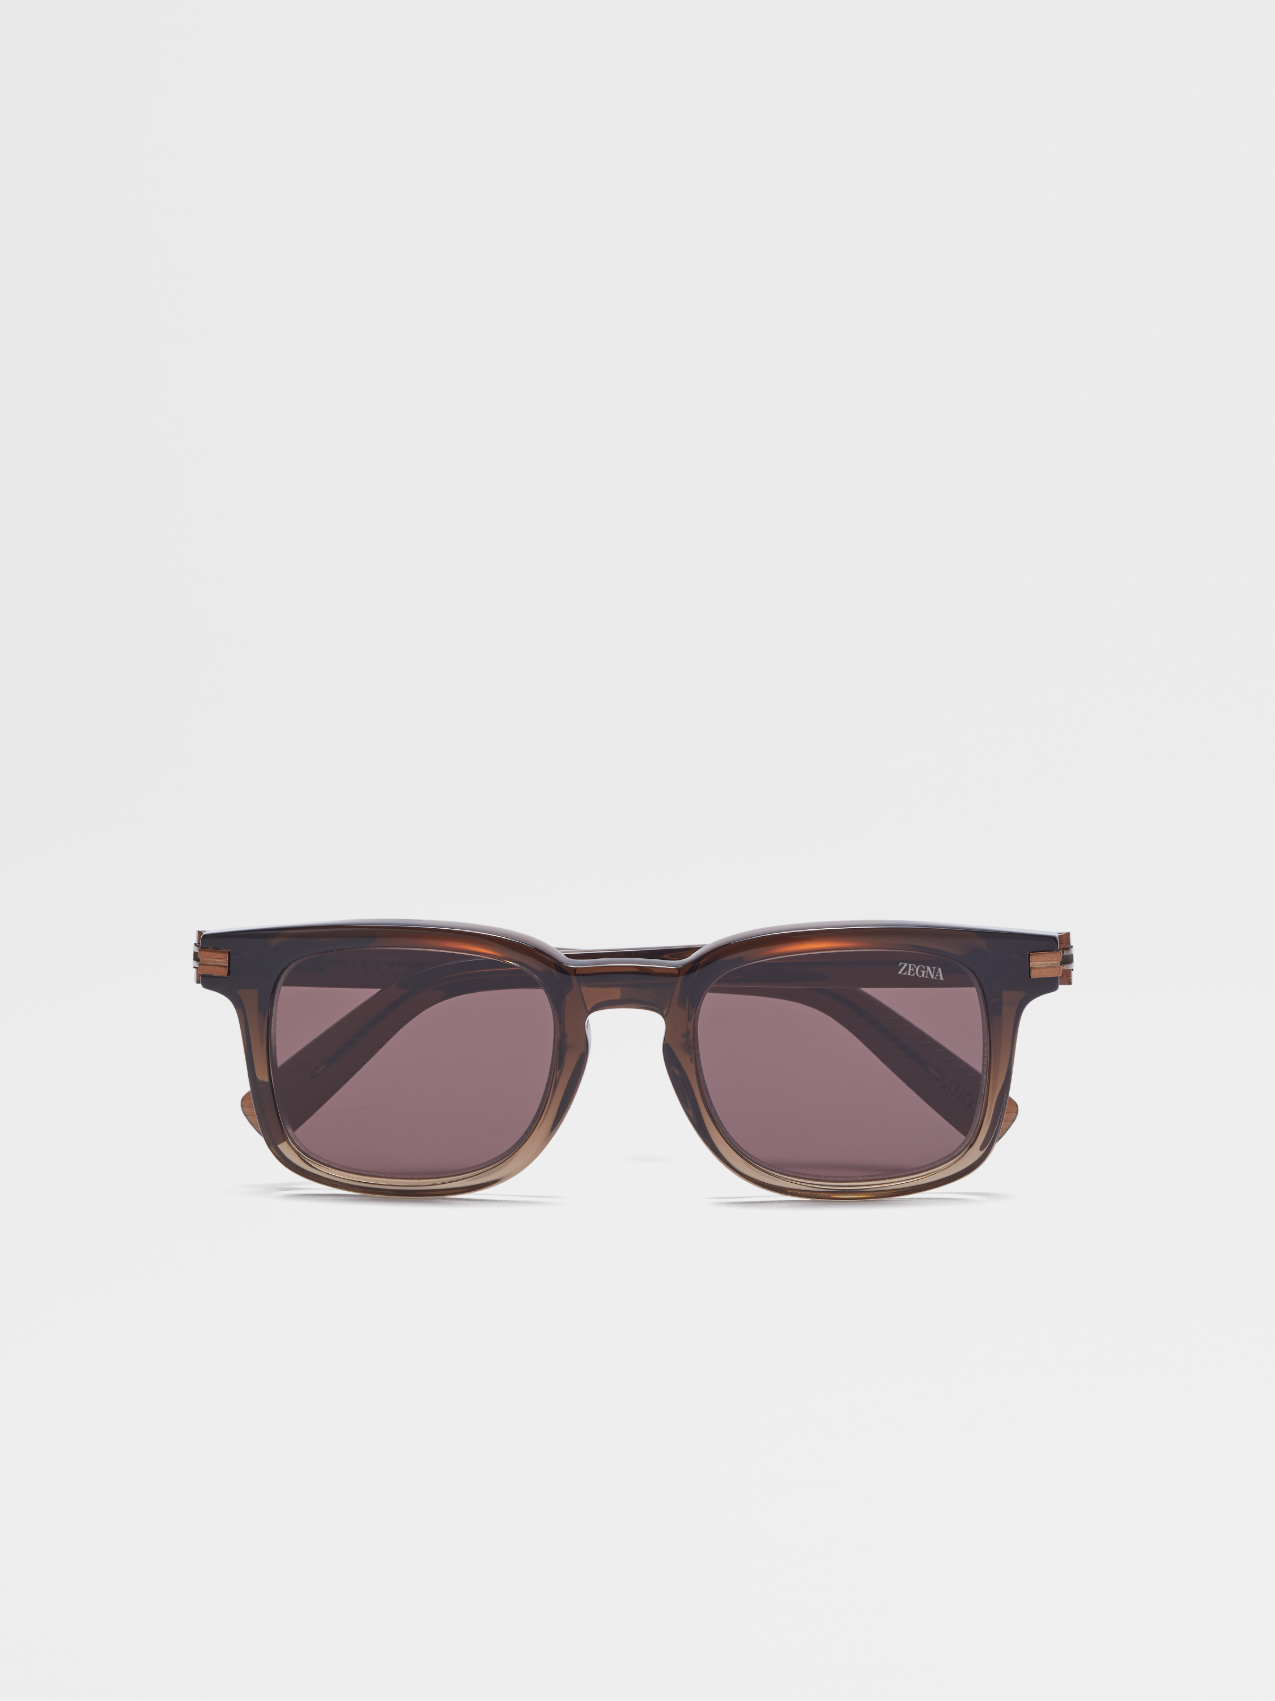 Gradient Brown Acetate Sunglasses